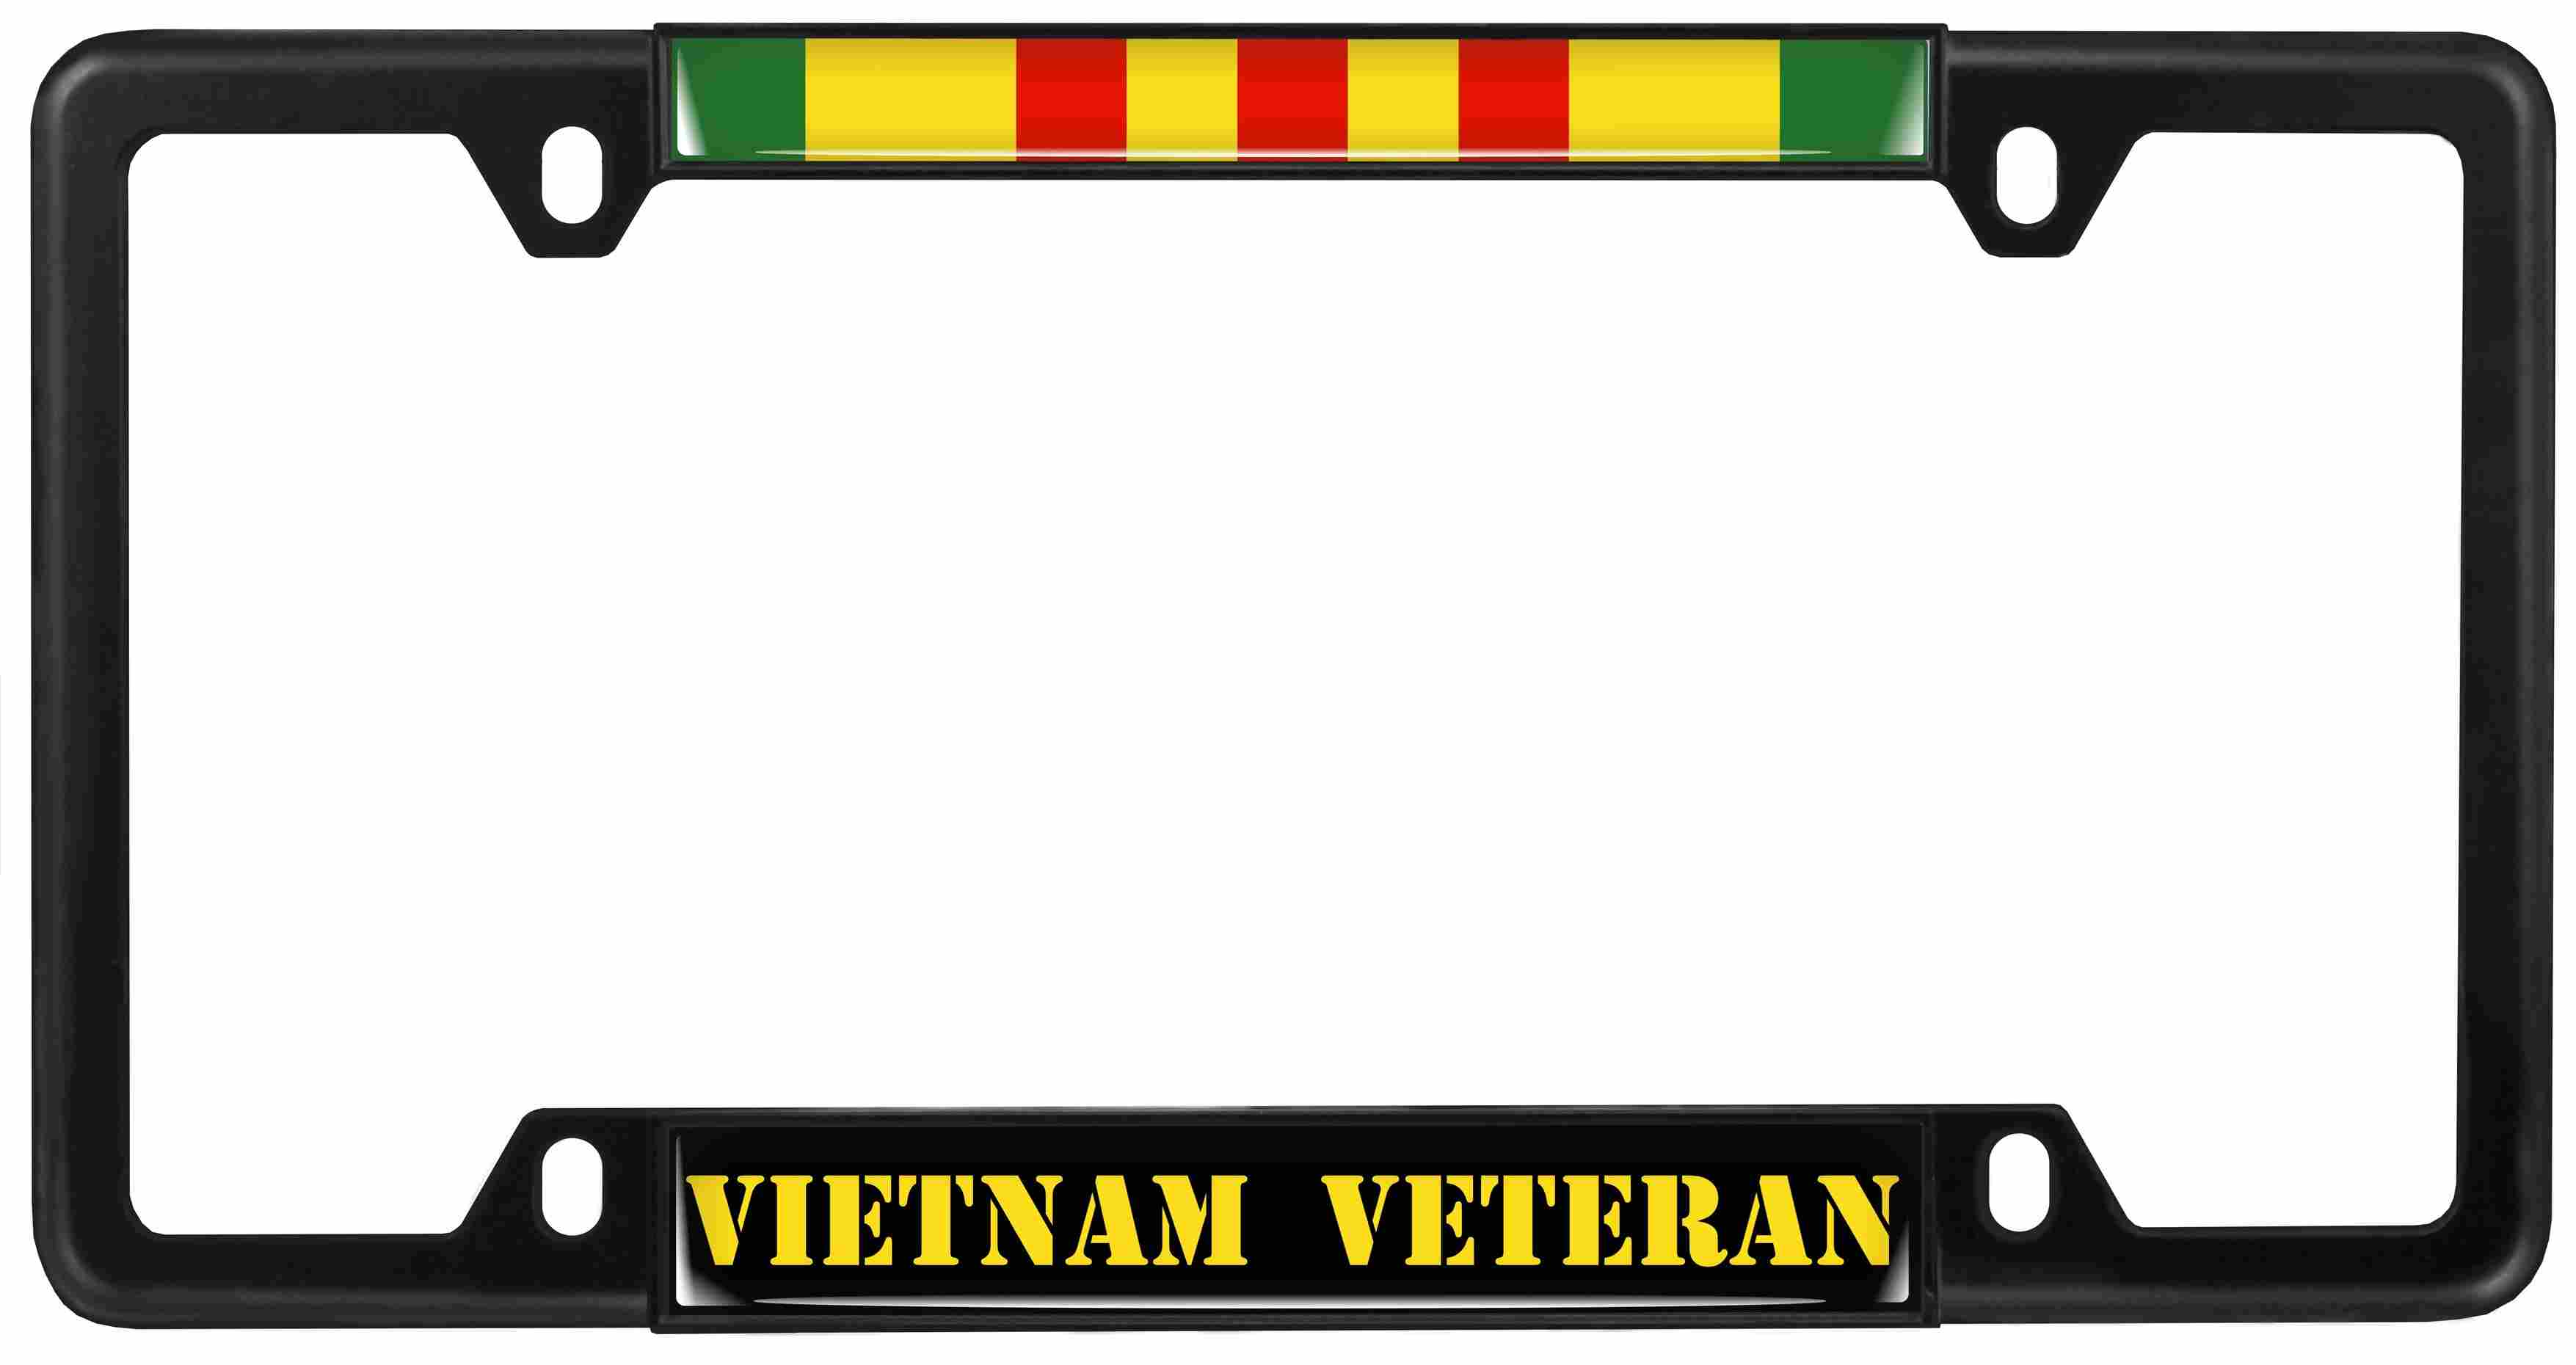 Vietnam Veteran - Car Metal License Plate Frame